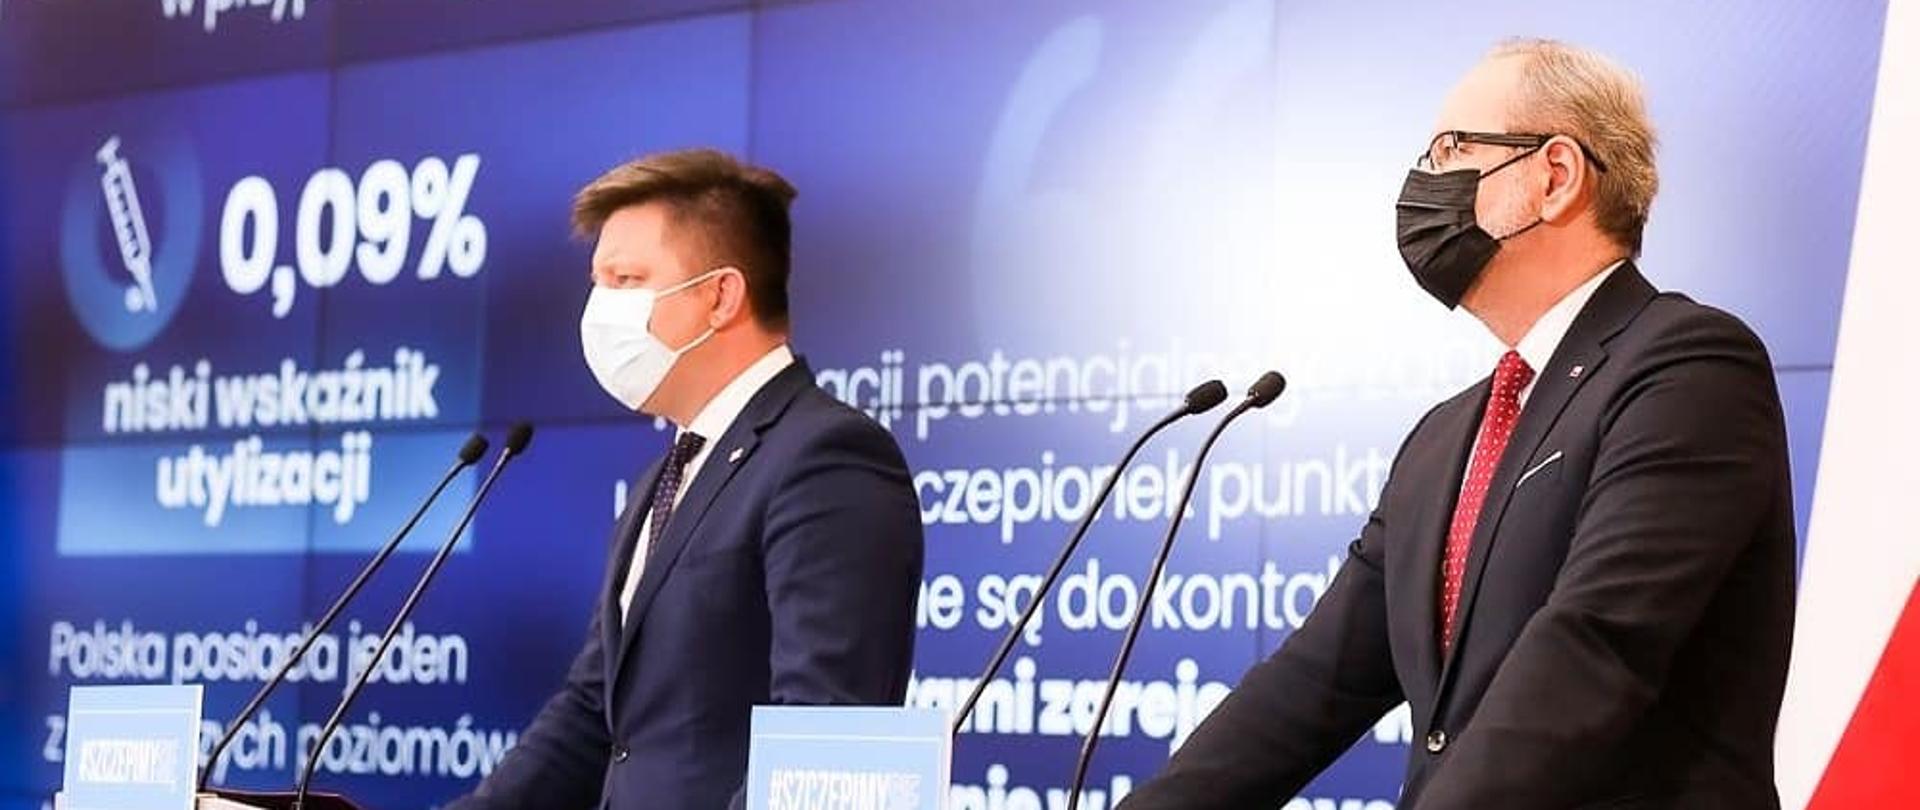 Minister Michał Dworczyk i Minister Adam Niedzielski - konferencja z dnia 09 kwietnia 2021, w tle prezentacja z niskim wskaźnikiem utylizacji szczepionek.